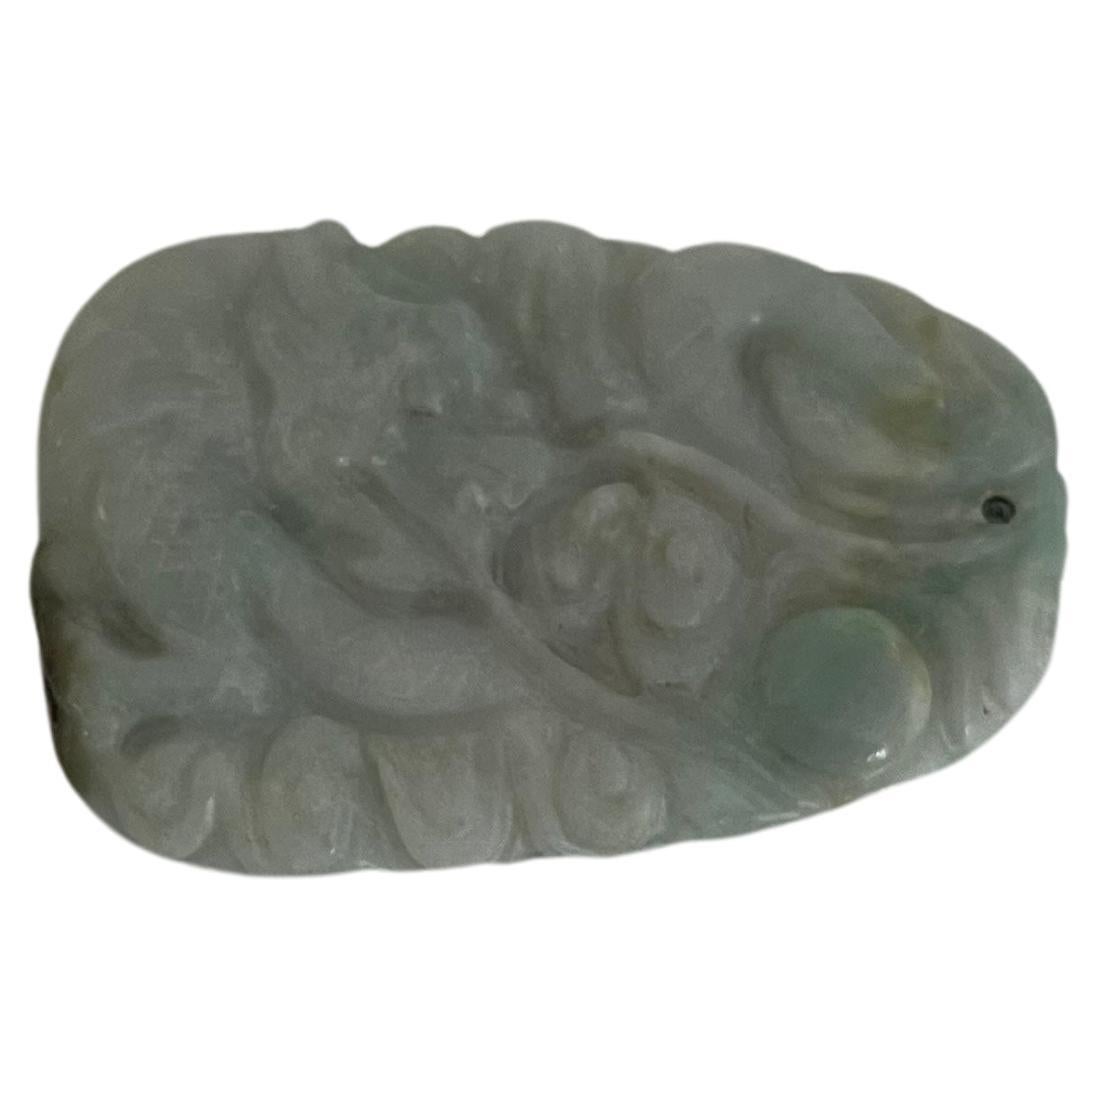 Il s'agit d'un très bon Jade chinois,  Pendentif en jadéite / néphrite que nous datons du début du 19ème siècle, période Qing.

Le jade présente différentes couleurs à l'intérieur de la pierre, principalement un gris colombe très pâle avec un